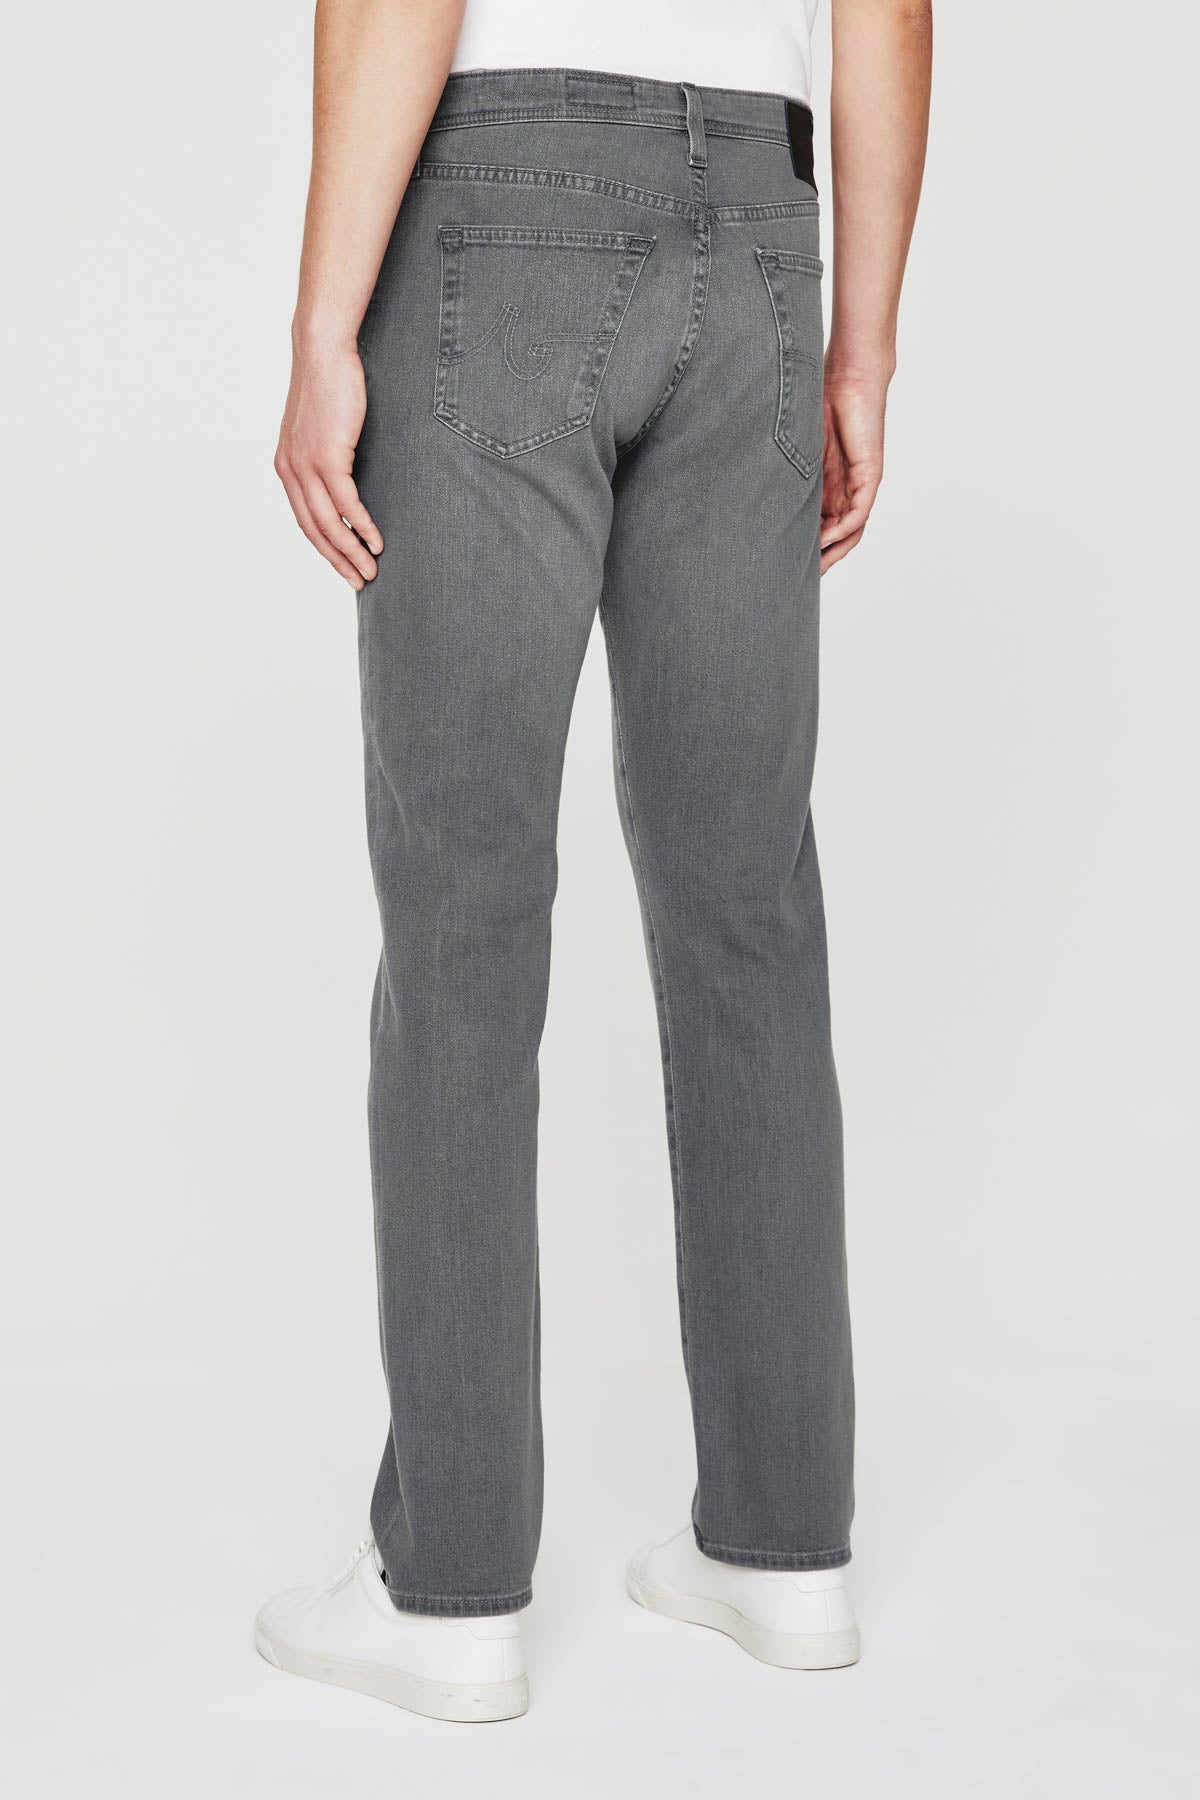 Tellis Modern Slim Jean - AG Jeans - Danali - 1783HYB-MORI-30